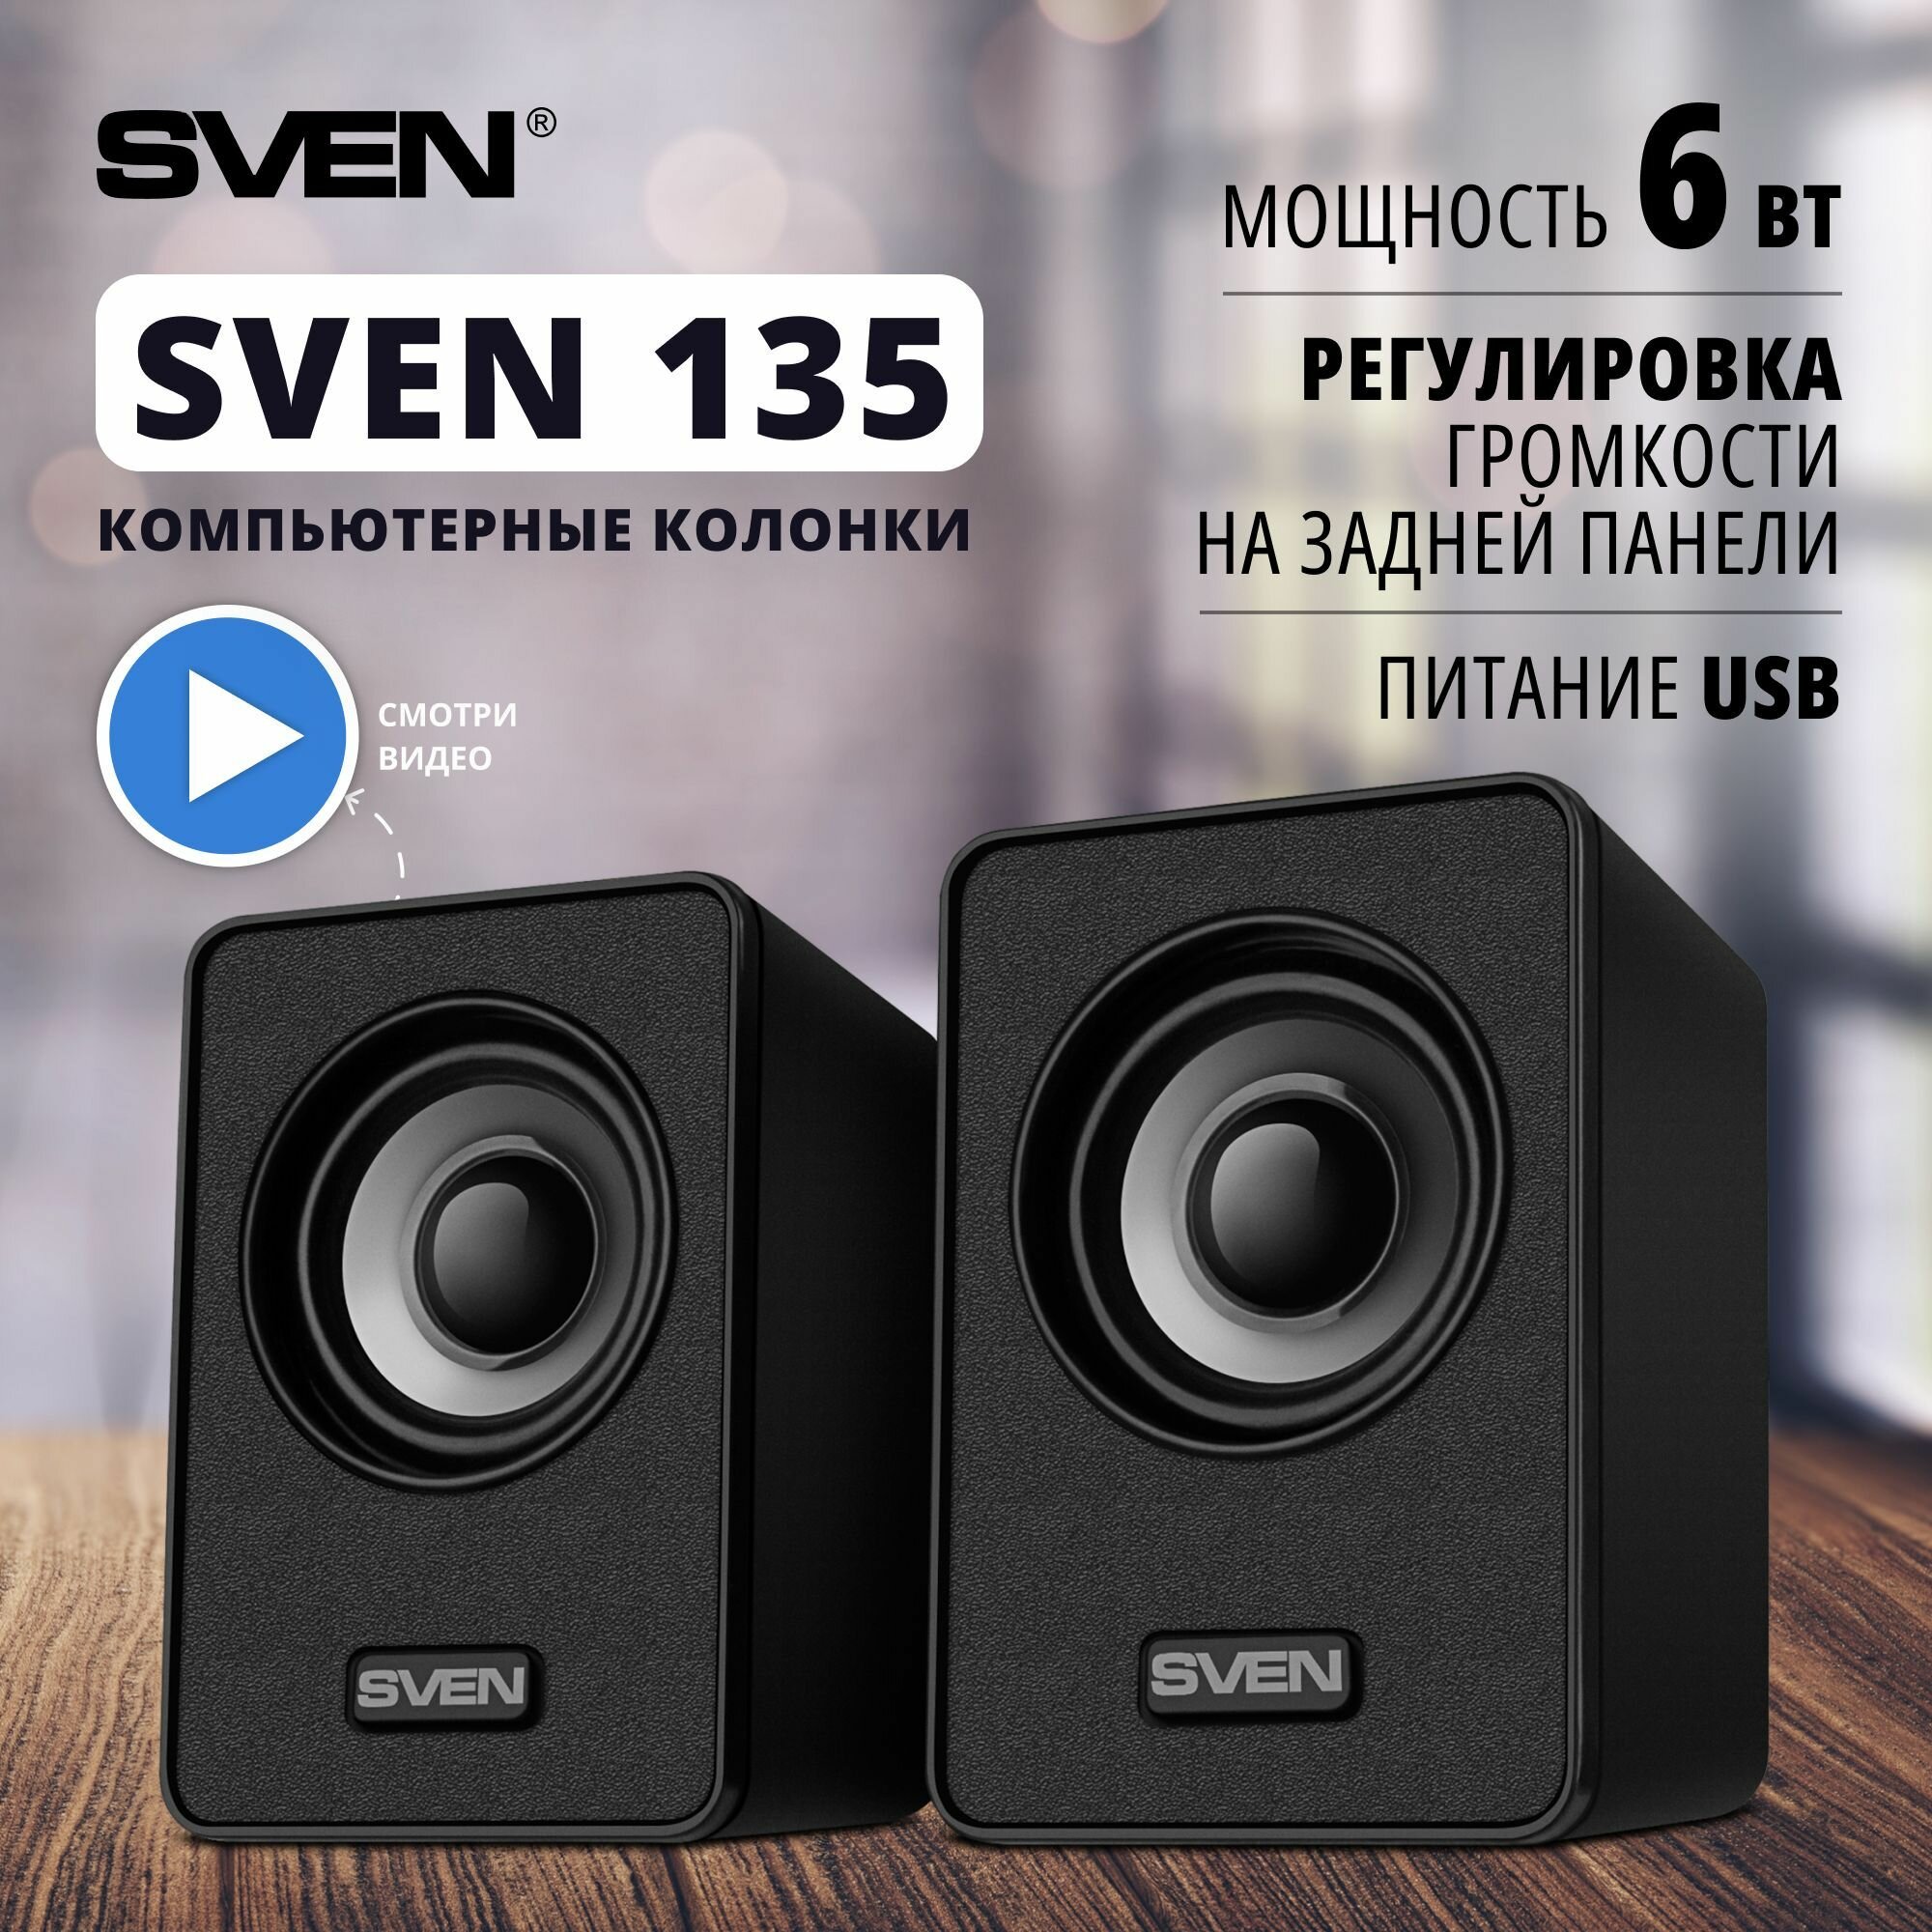 АС SVEN 135, черный (6 Вт, питание USB)